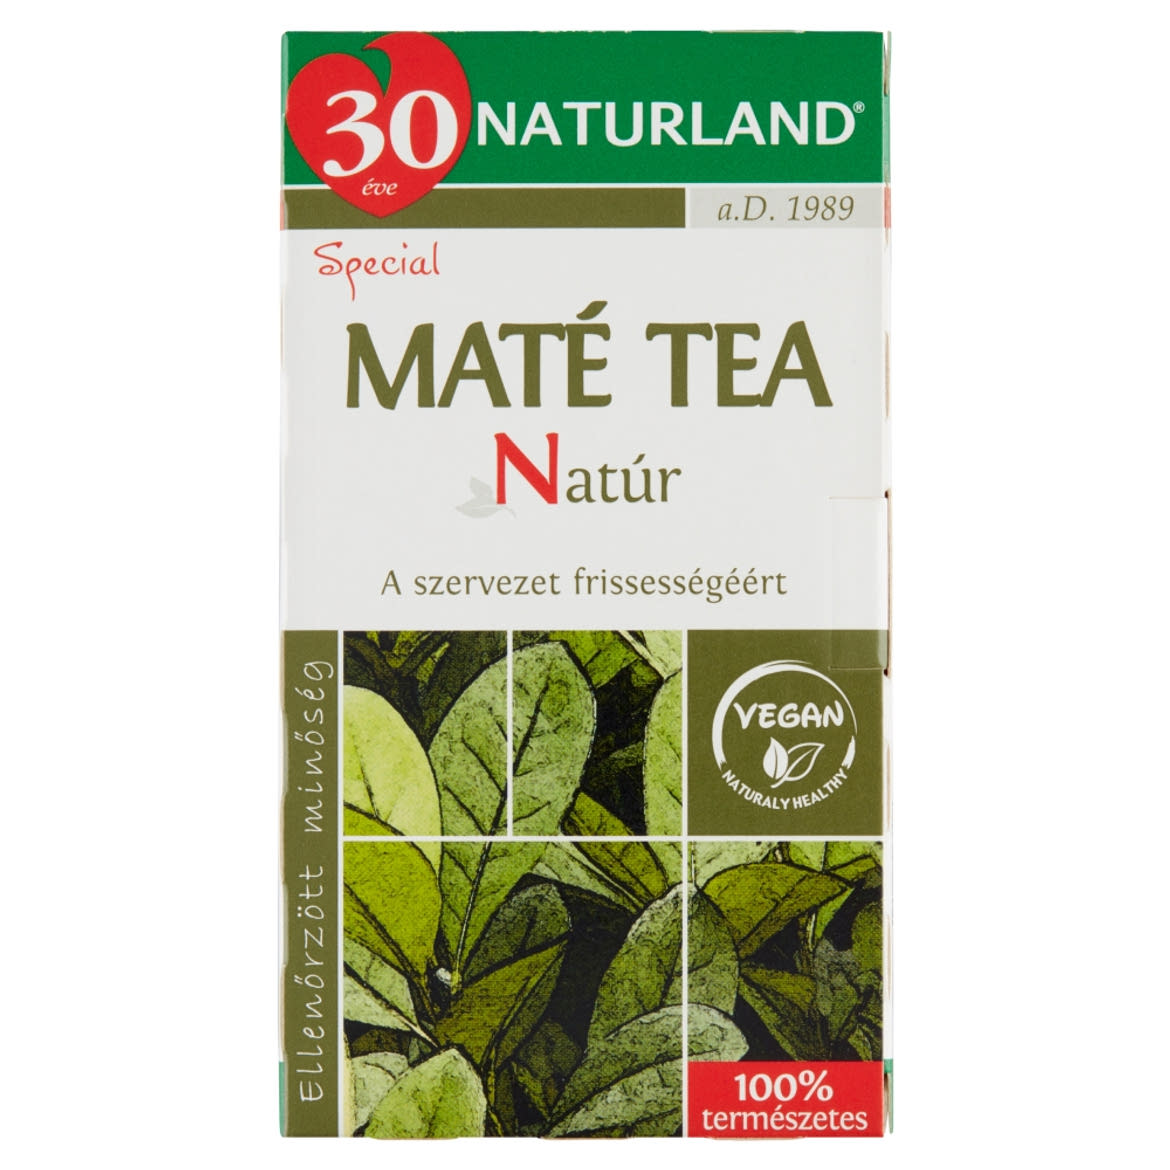 Naturland Special natúr maté tea